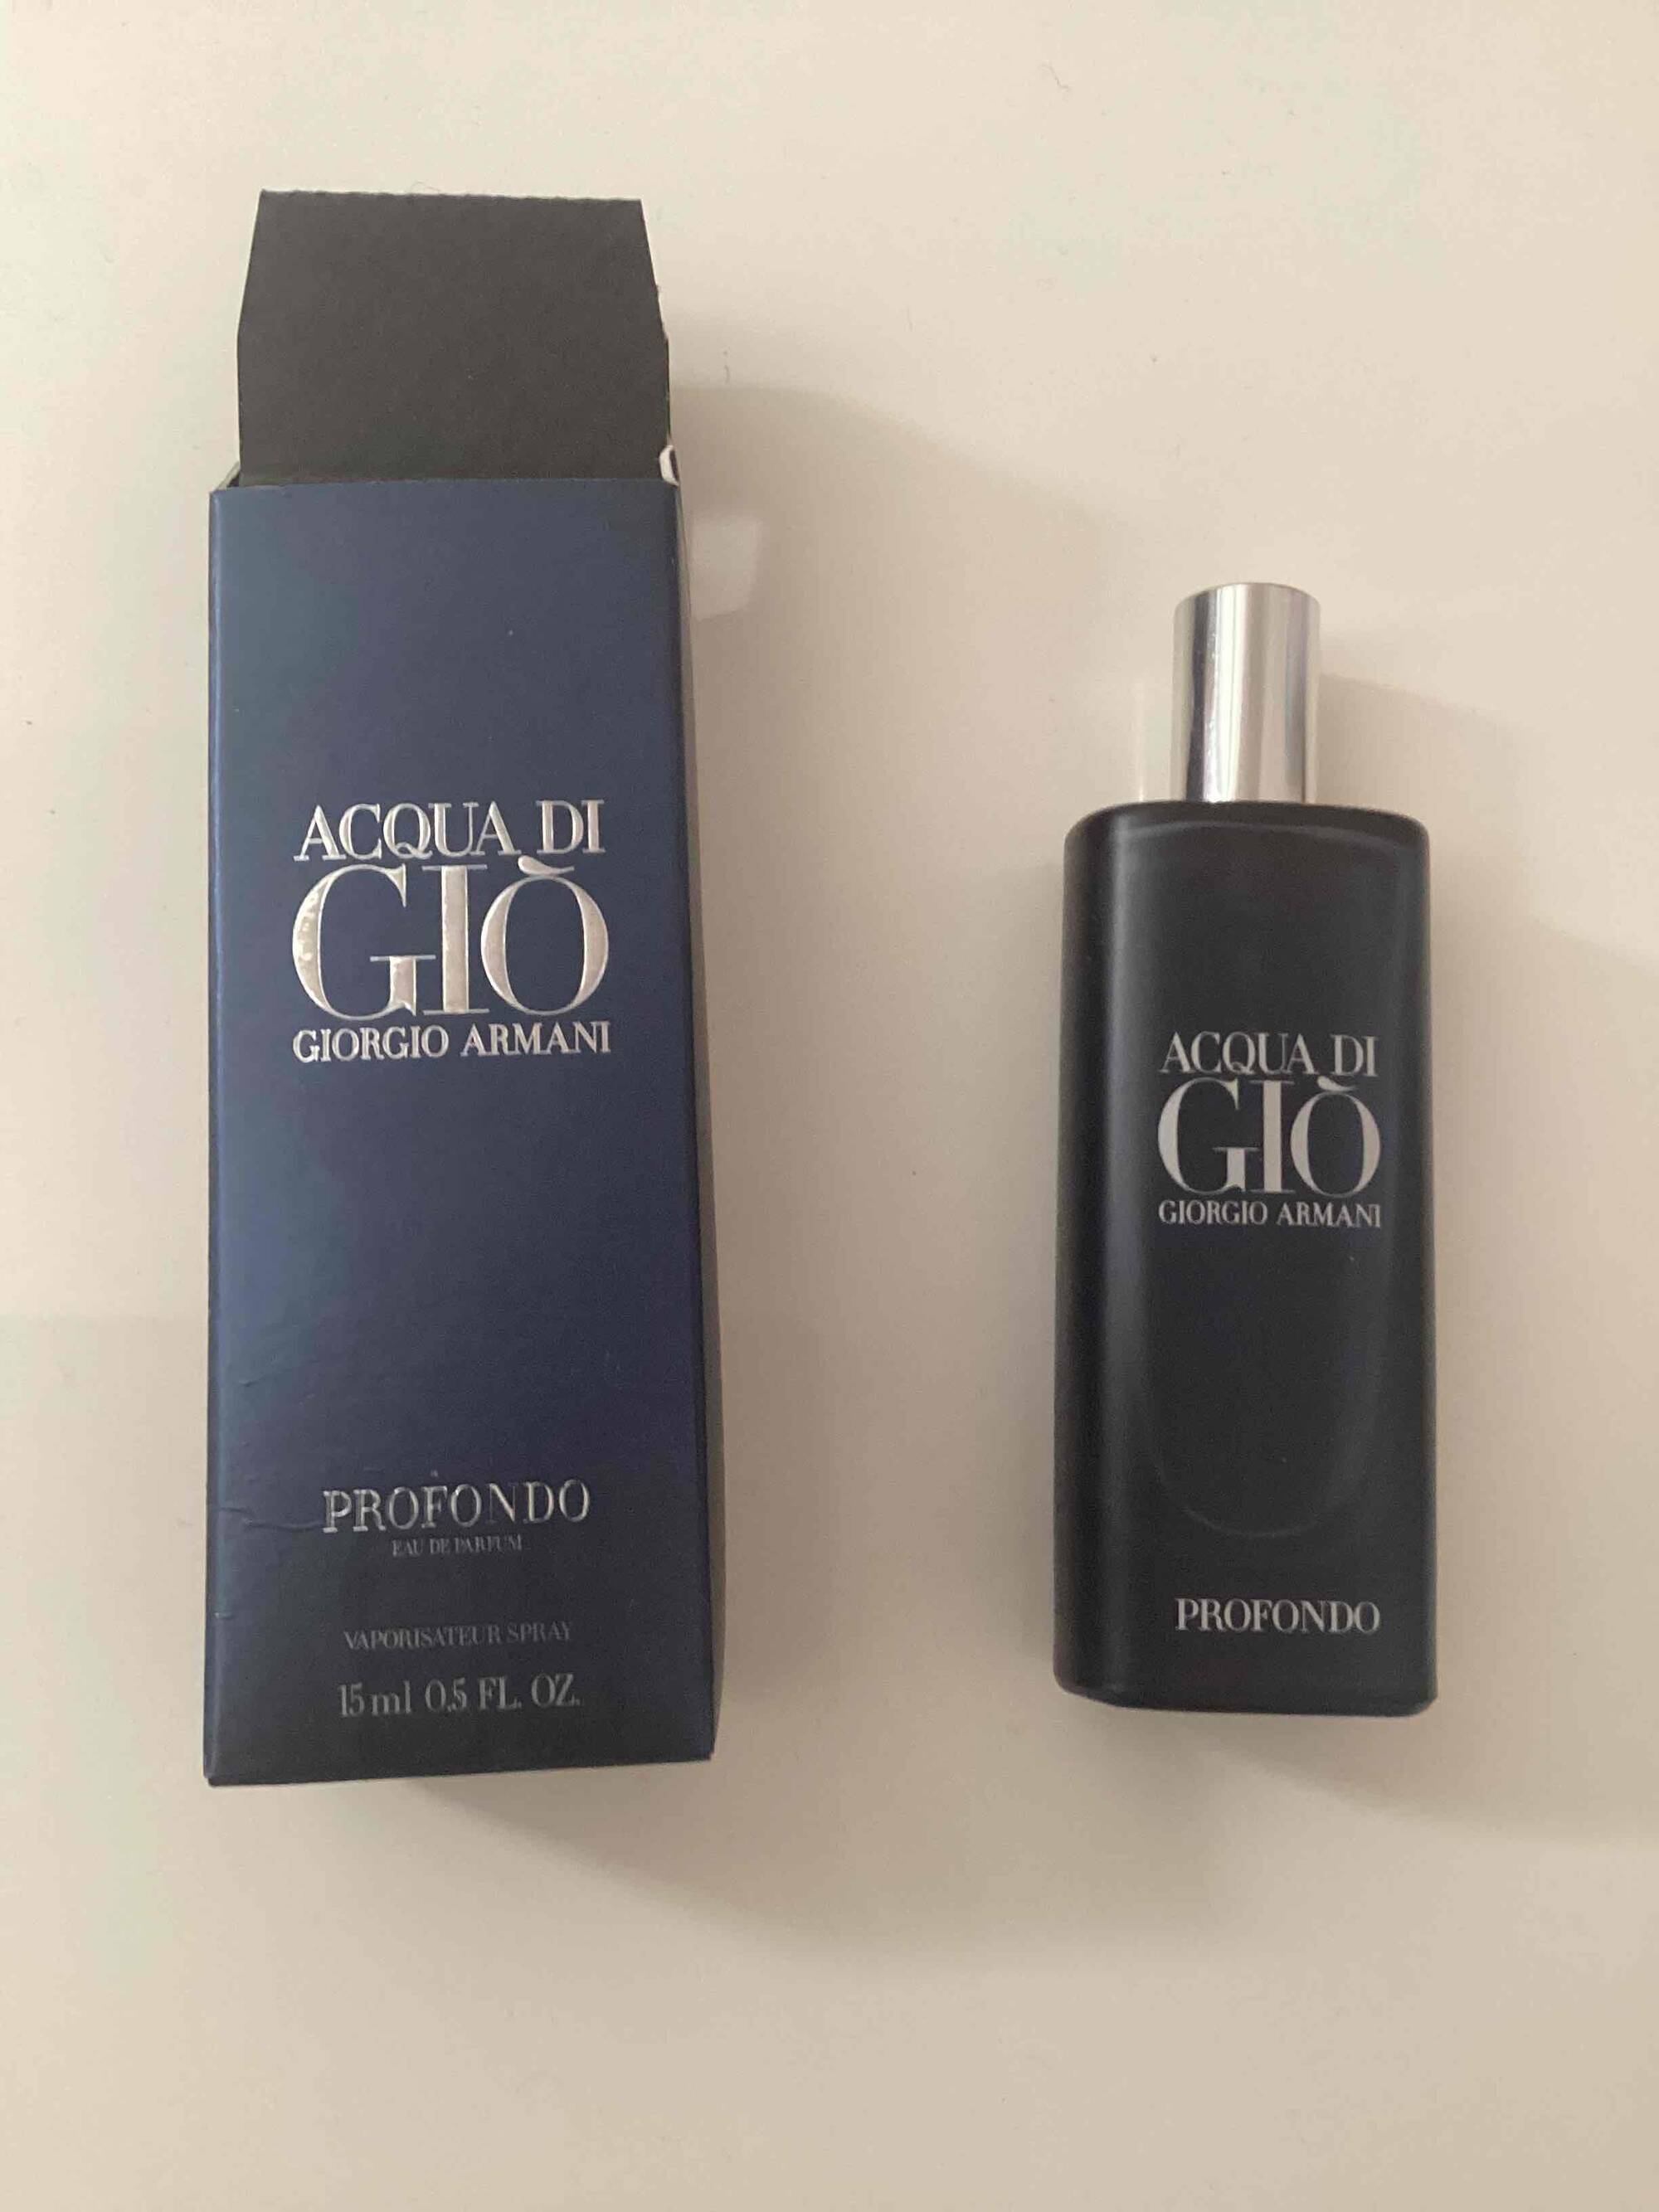 GIORGIO ARMANI - Acqua di gio - Profondo eau de parfum 